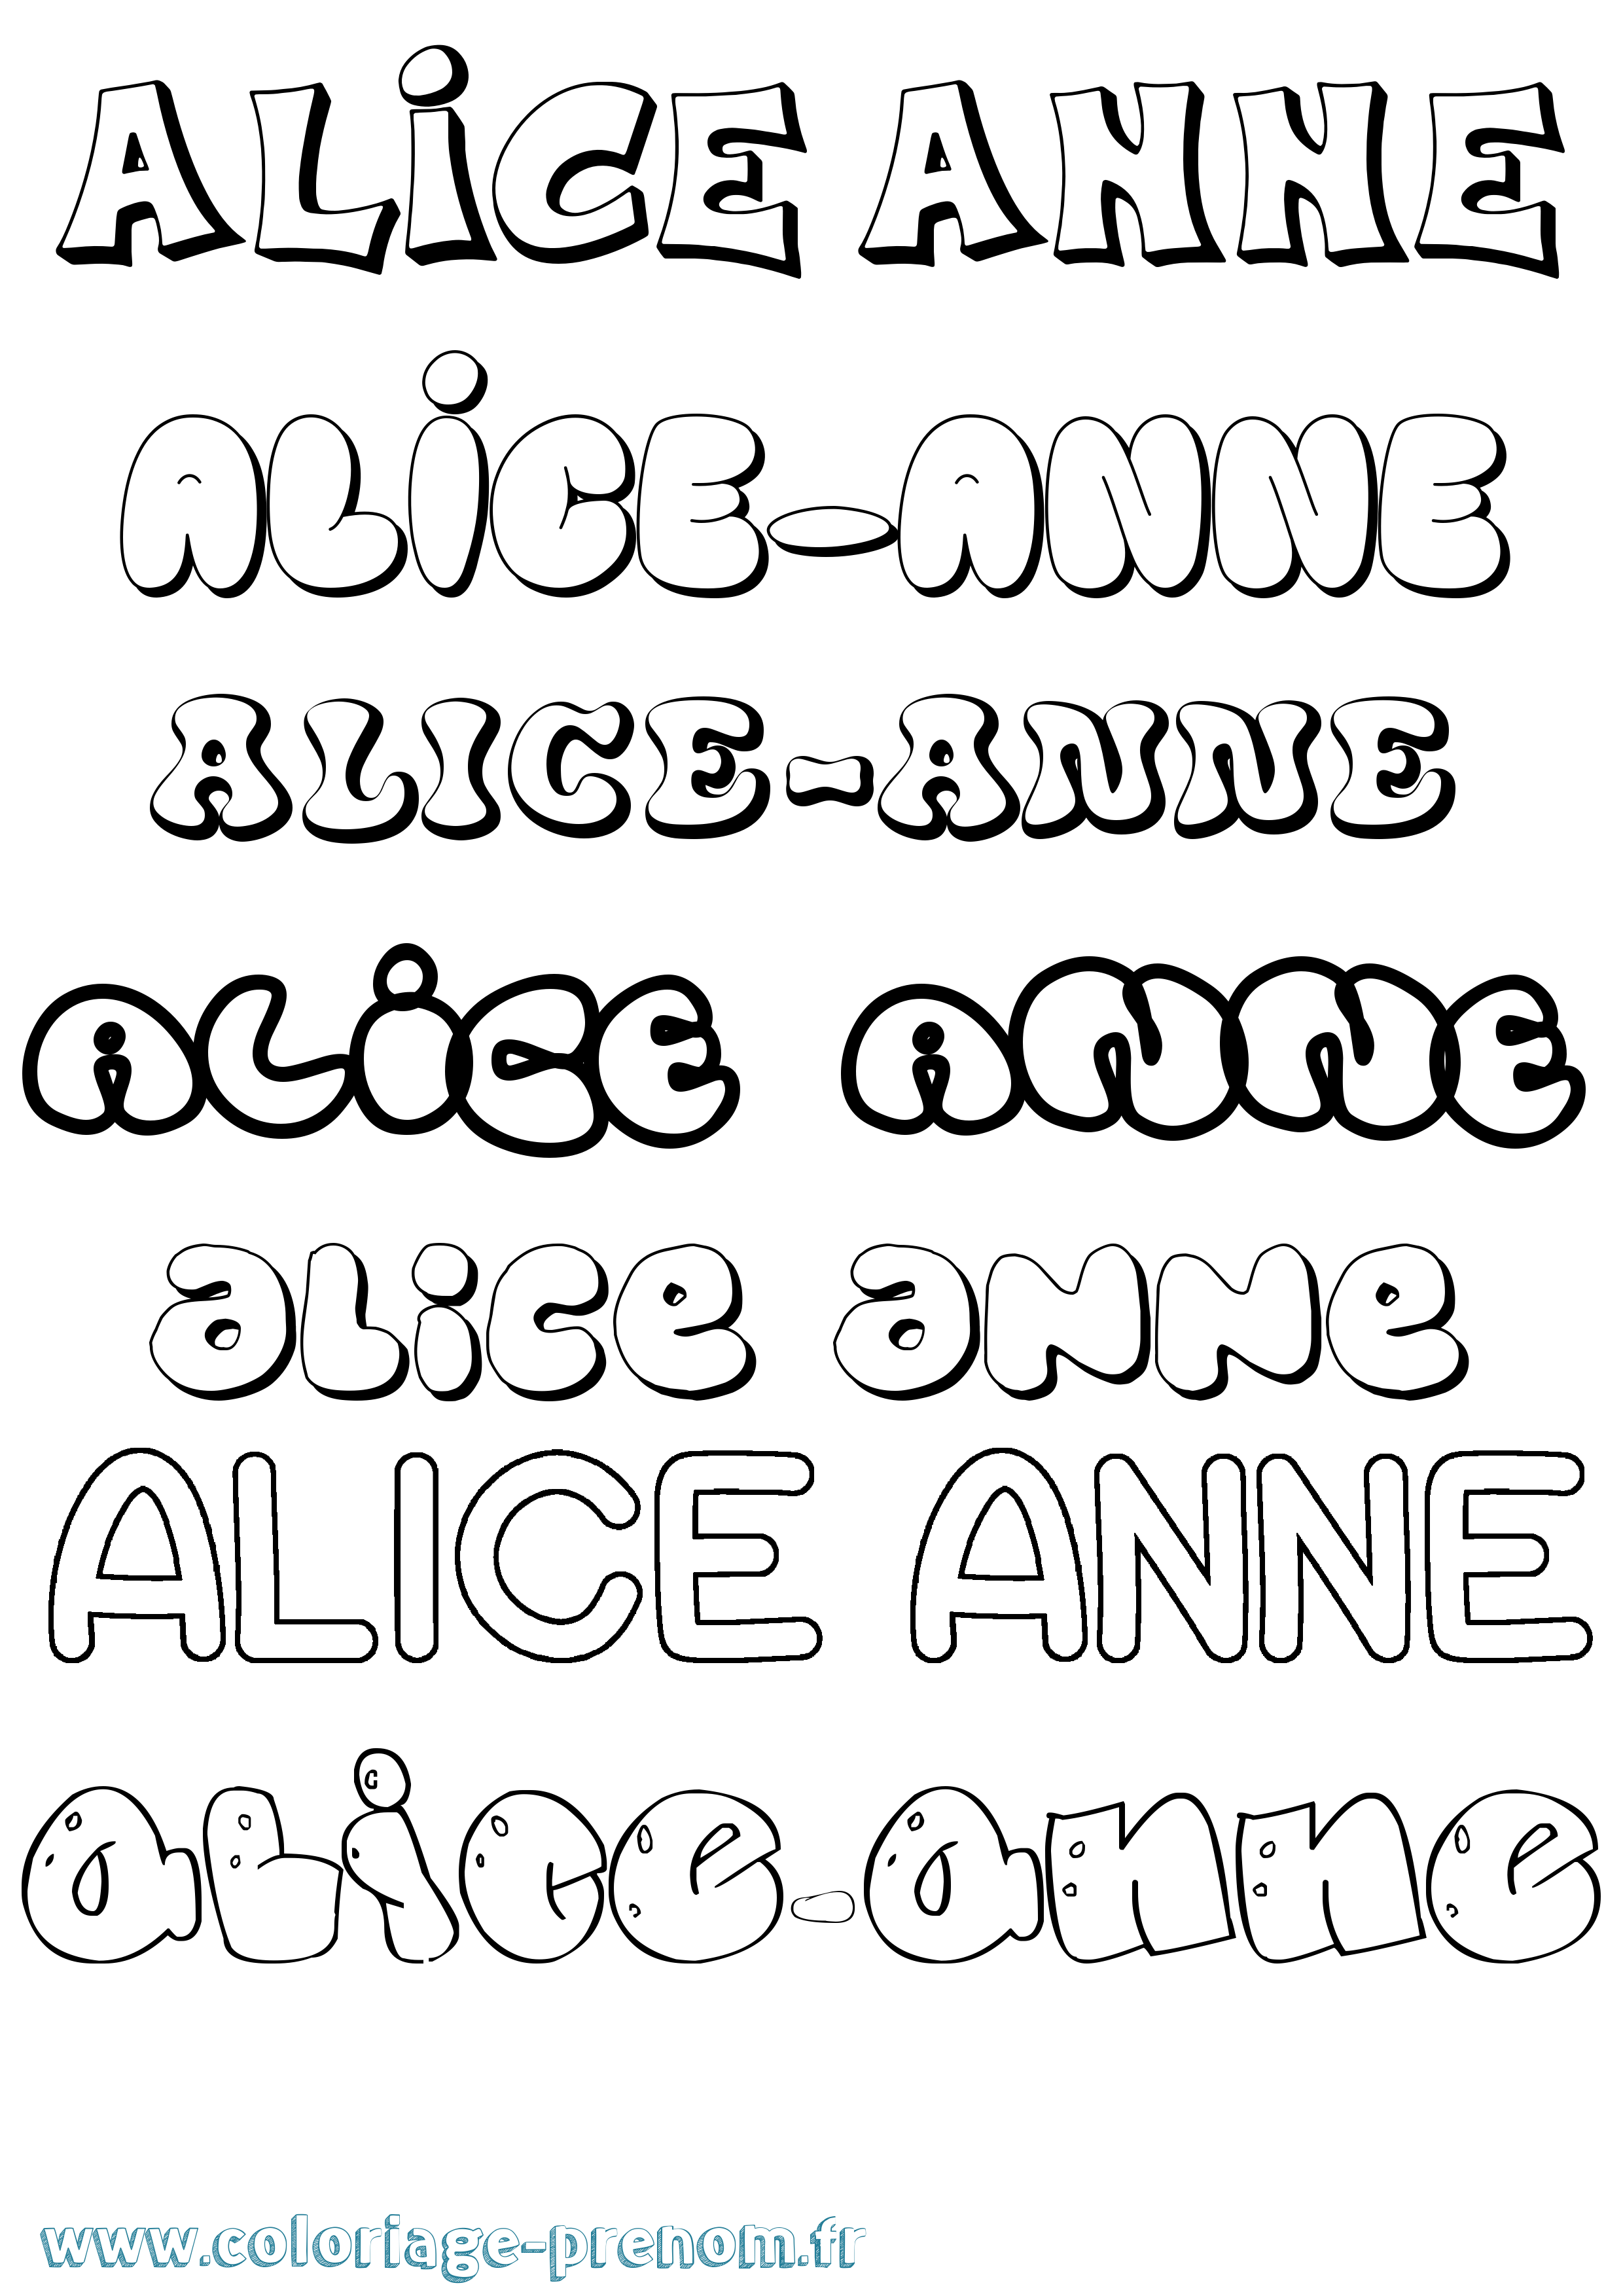 Coloriage prénom Alice-Anne Bubble